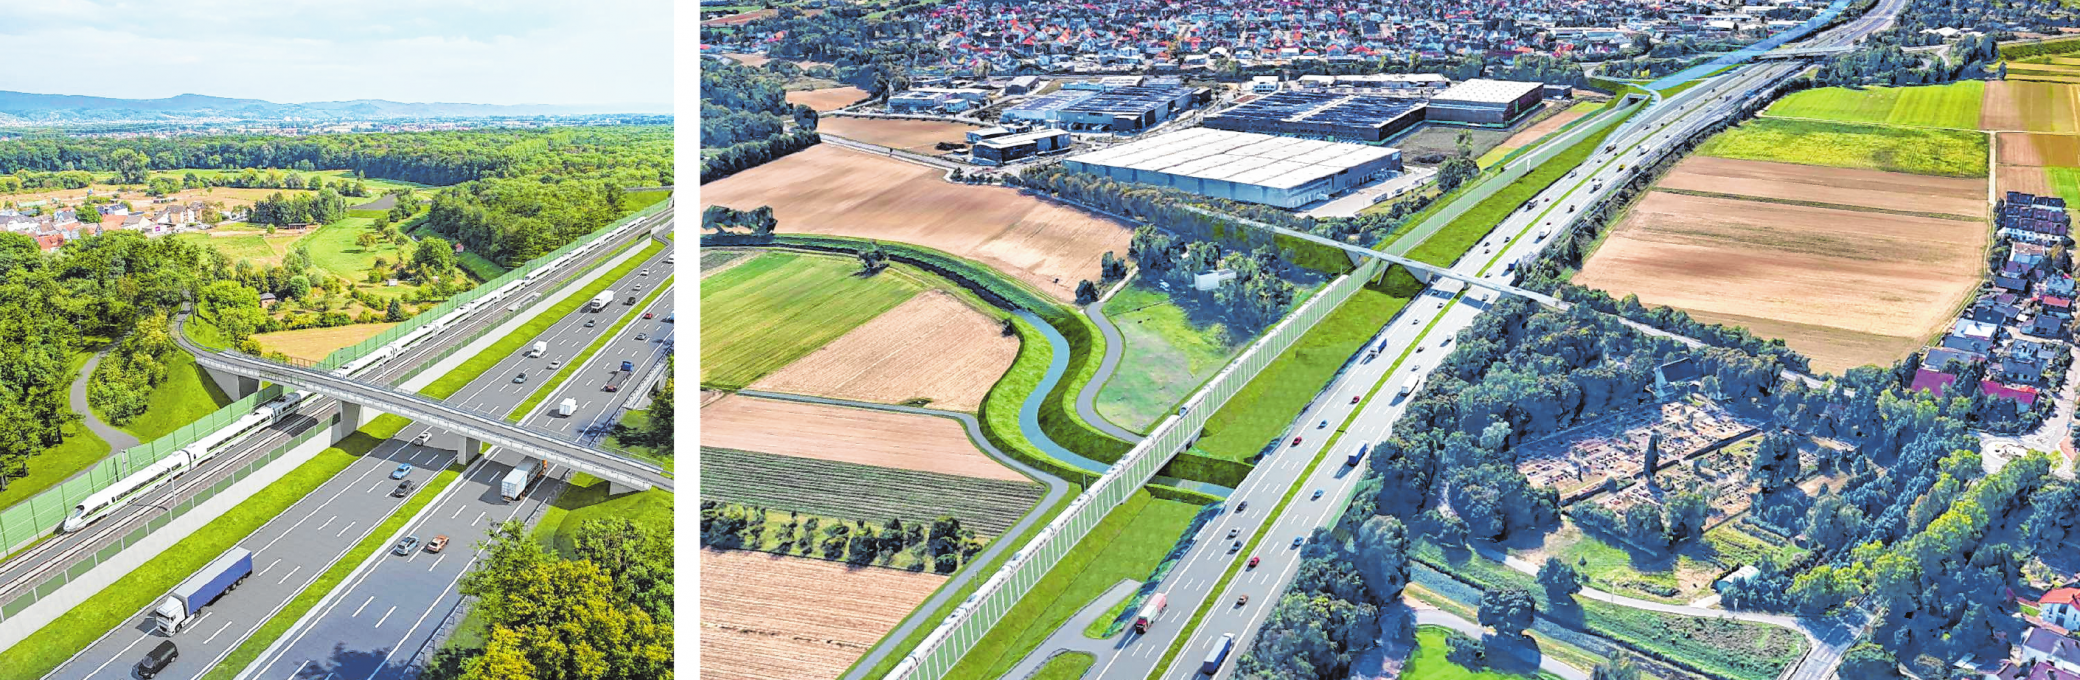 So könnte die Neubaustrecke nach den Planungen der Bahn entlang der Autobahn A67 bei Langwaden (links) und zwischen Lorsch und Einhausen (rechts) verlaufen. GRAFIKEN: JULIAN LEYES/BAHN